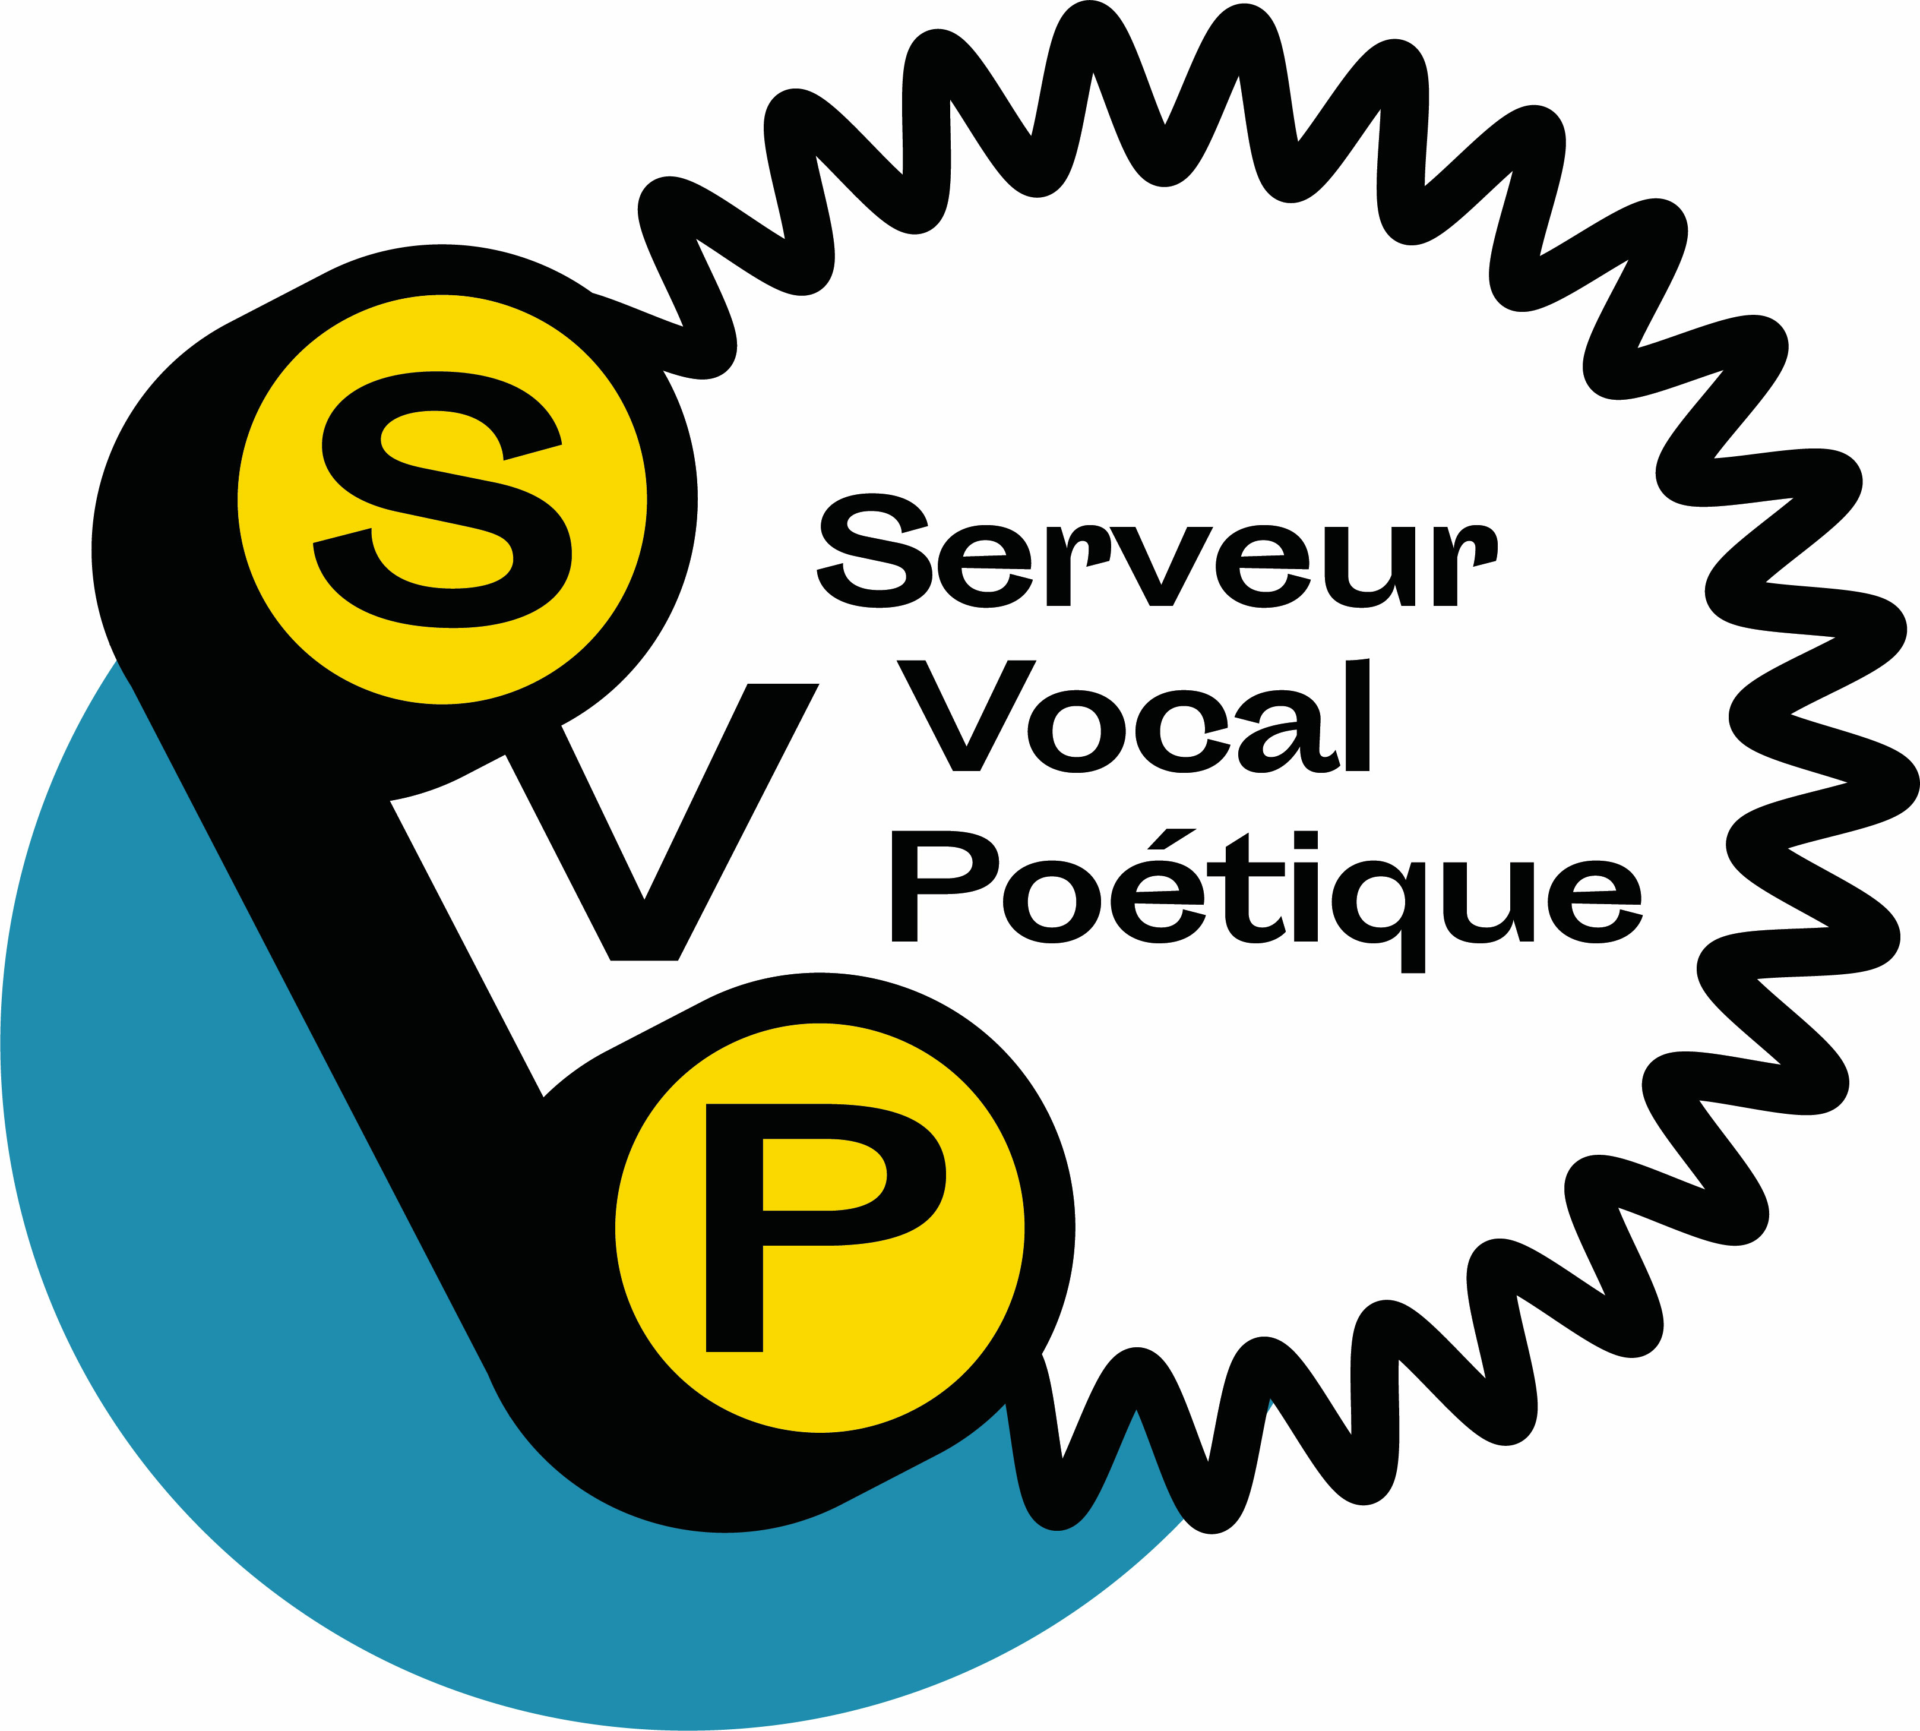 Logo SVP